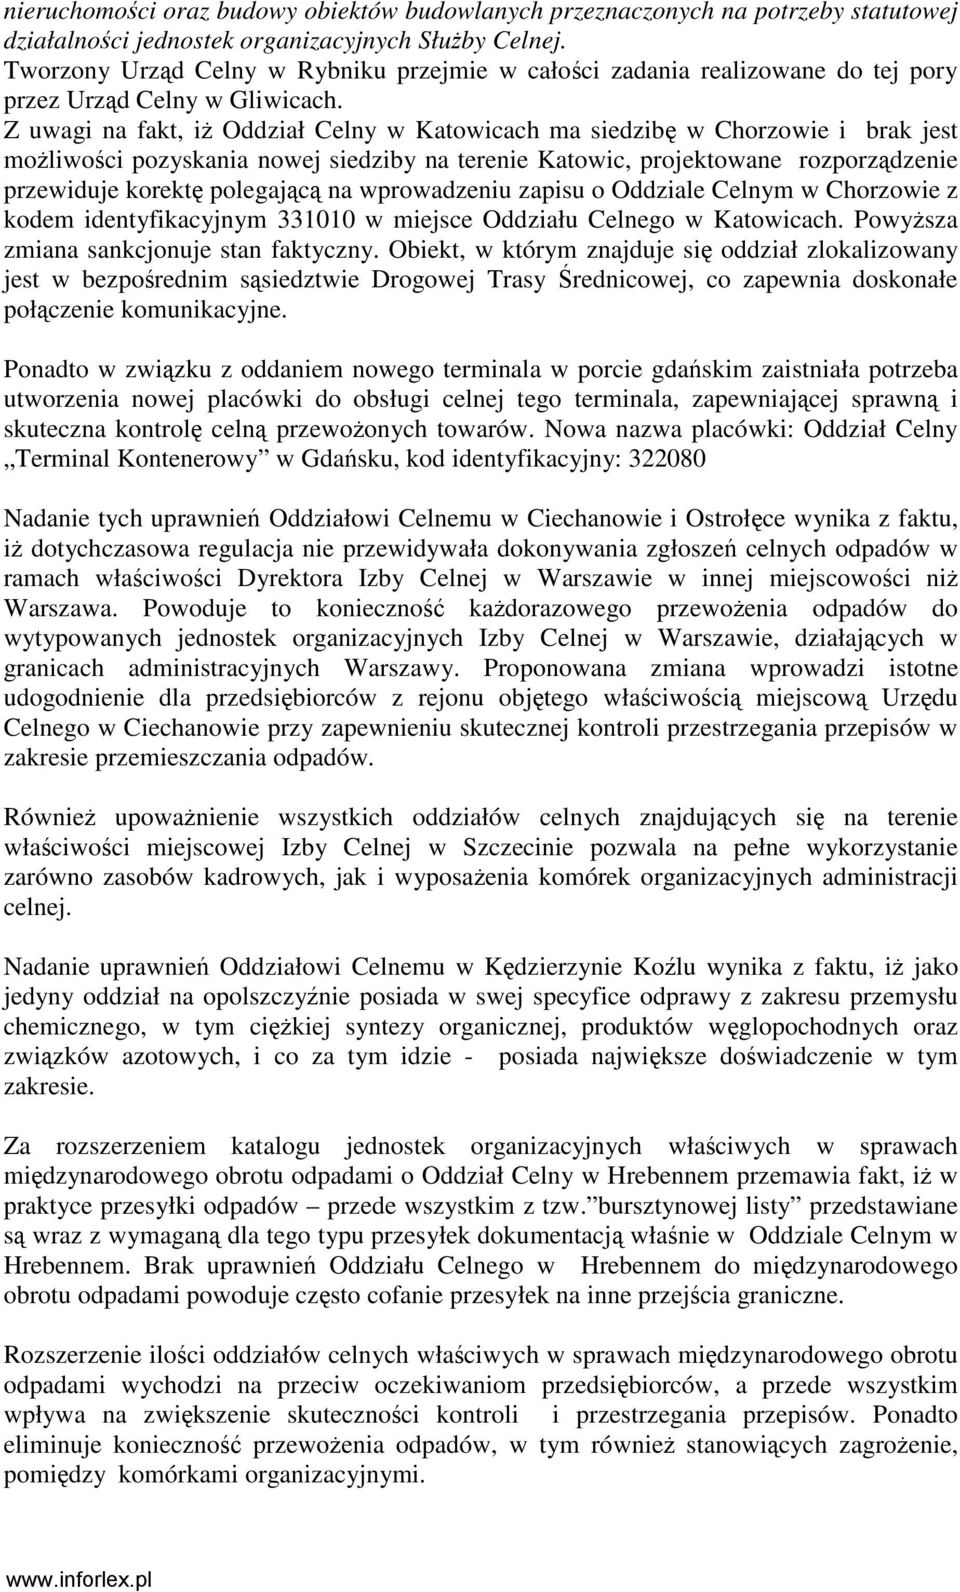 Z uwagi na fakt, iŝ Oddział Celny w Katowicach ma siedzibę w Chorzowie i brak jest moŝliwości pozyskania nowej siedziby na terenie Katowic, projektowane rozporządzenie przewiduje korektę polegającą